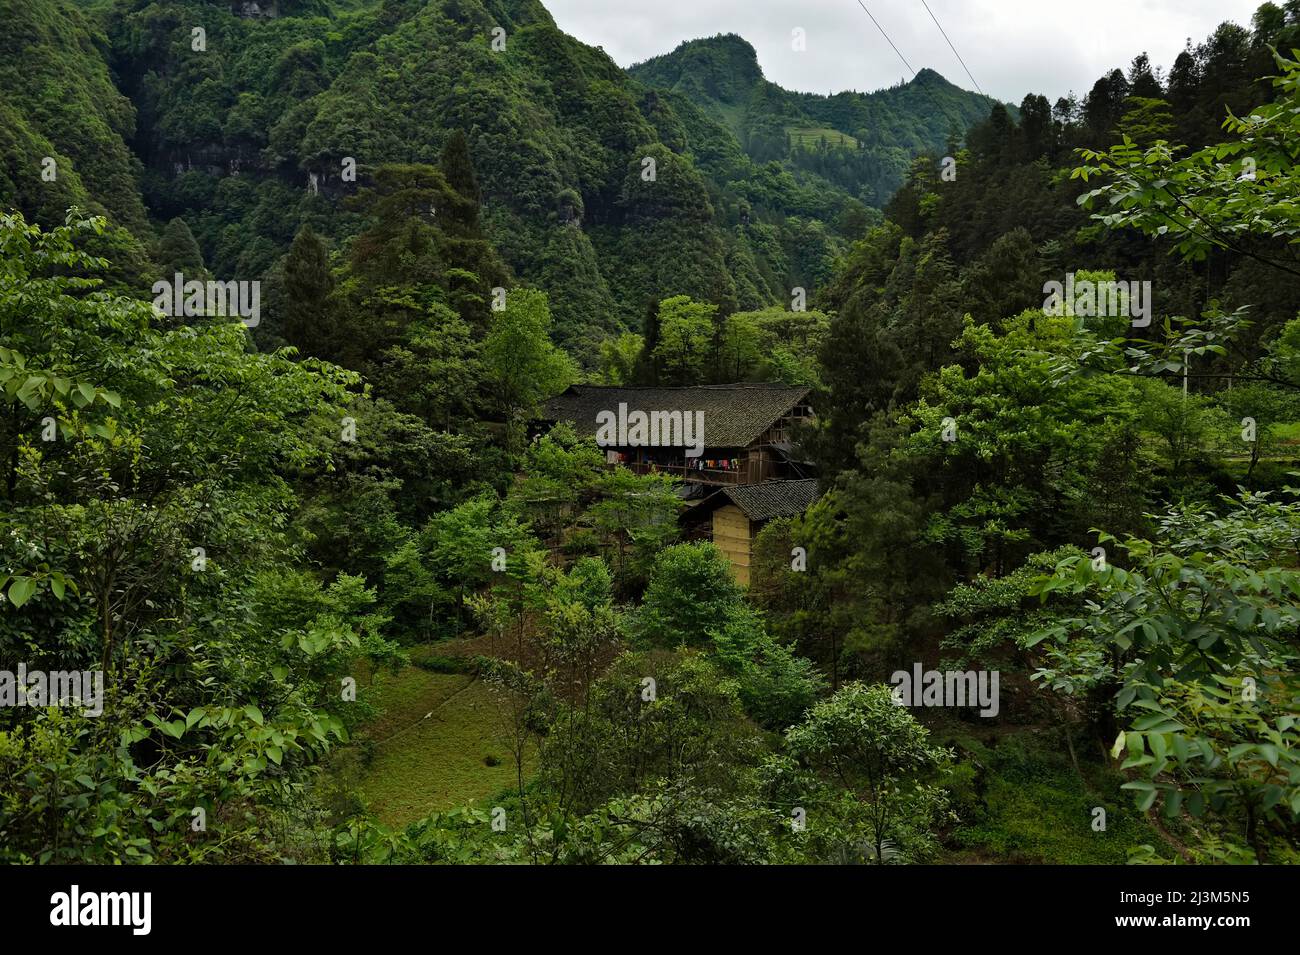 Montagne calcaree vegetate torre sopra una struttura costruita.; Wulong, provincia di Chongqing, Cina. Foto Stock